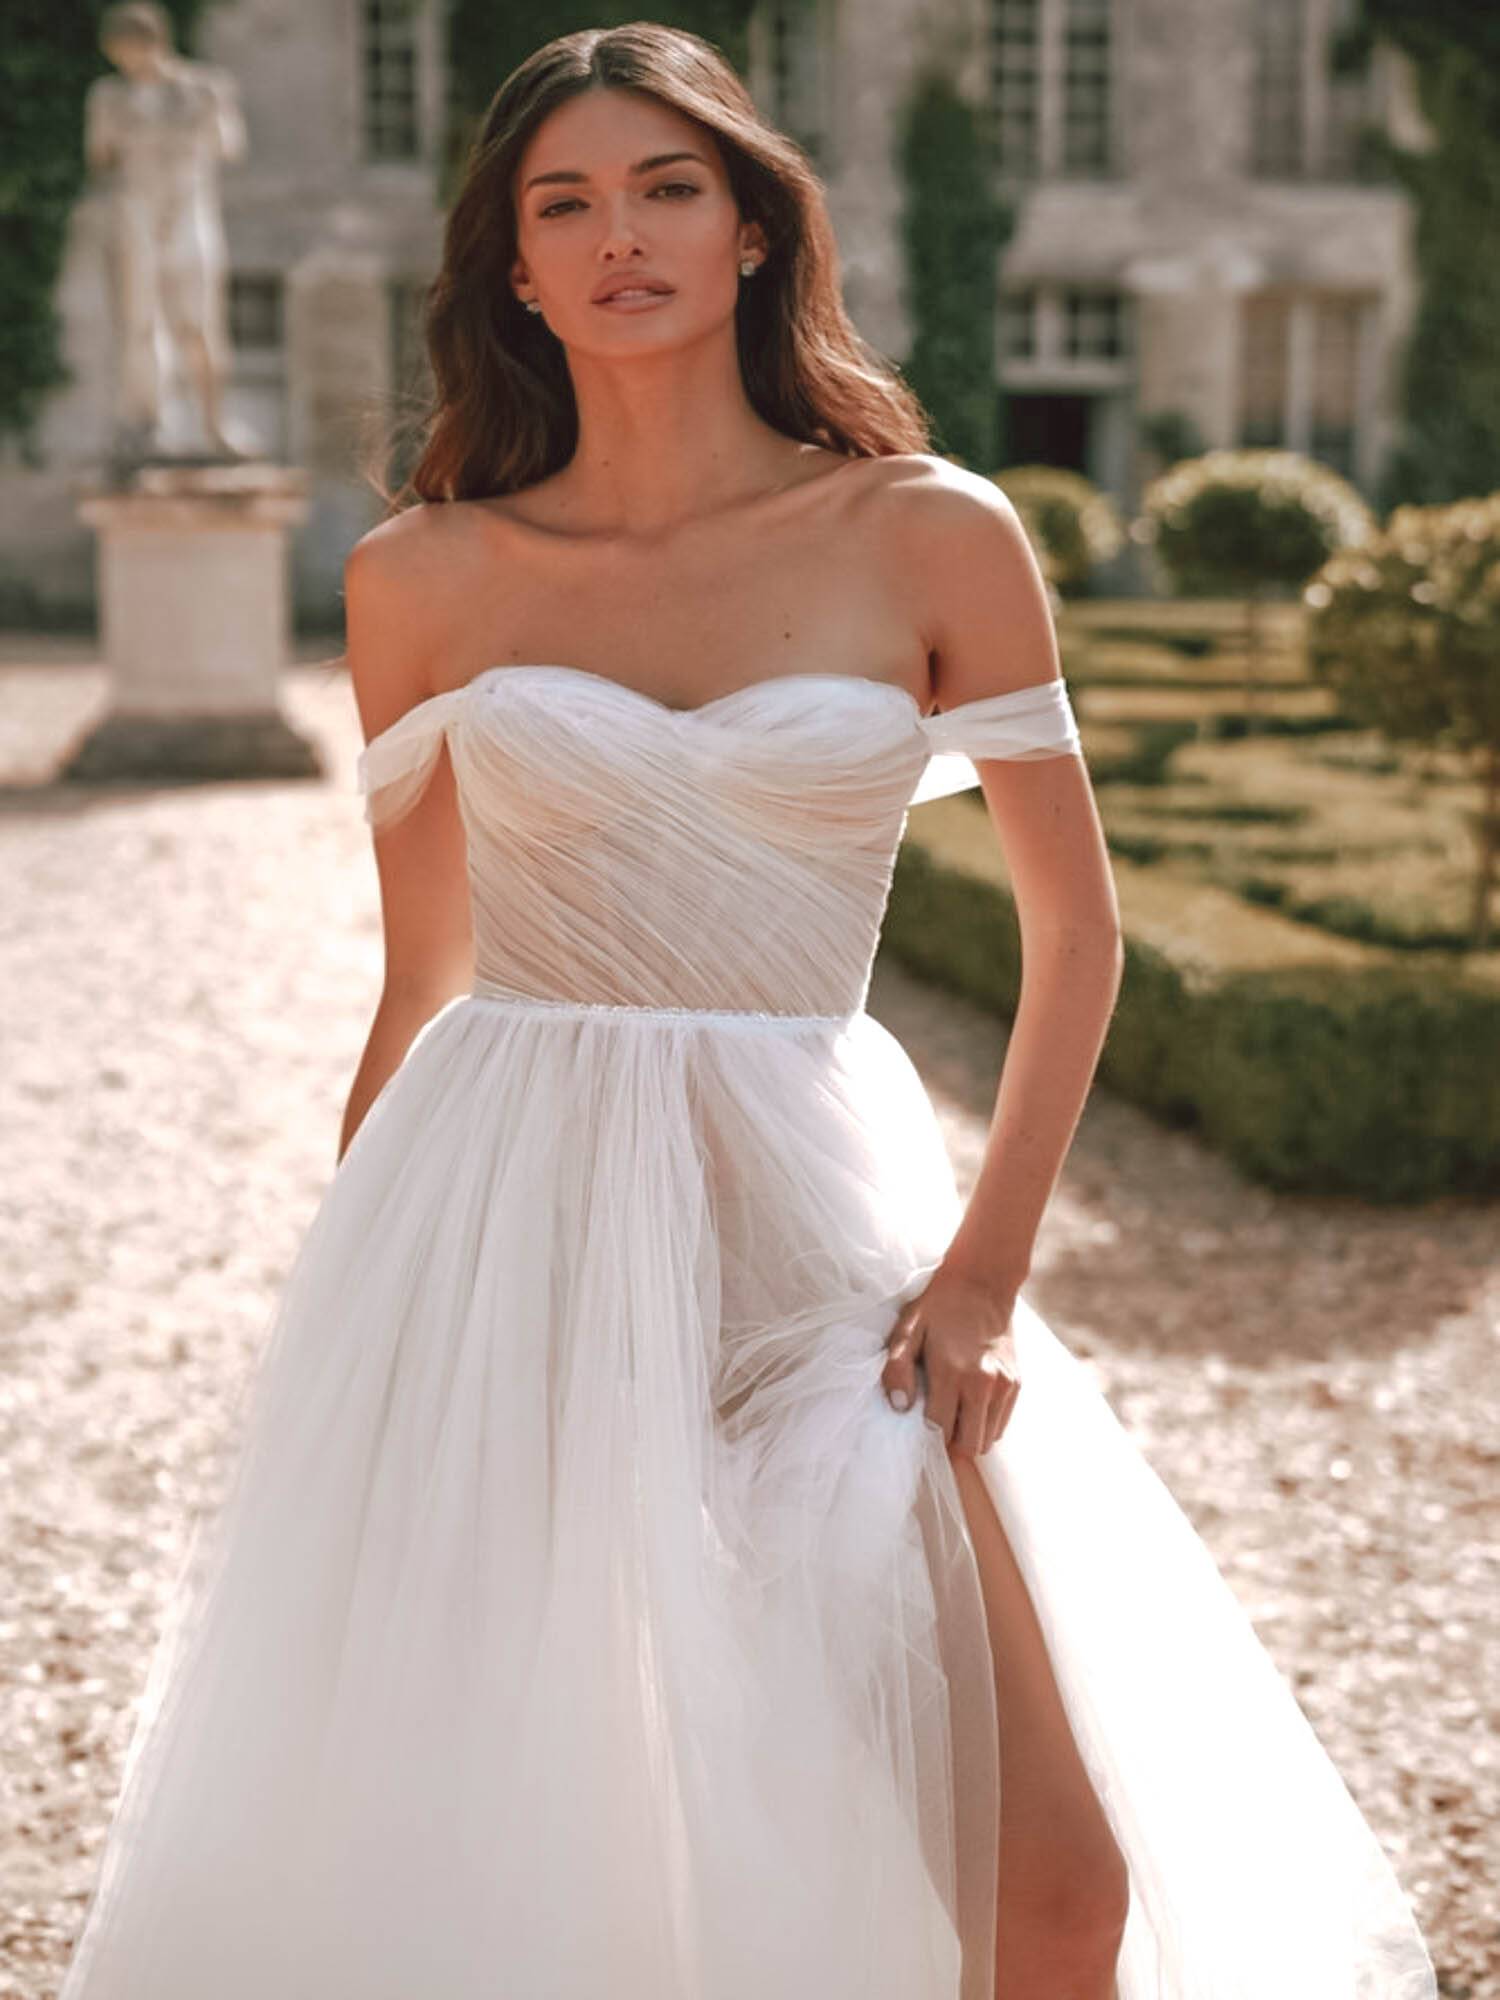 Notre zone d'activité pour ce service Magasin de robes de mariée couture haut de gamme créateur Milla Nova proche d'Aix-en-Provence dans les Bouches-du-Rhône